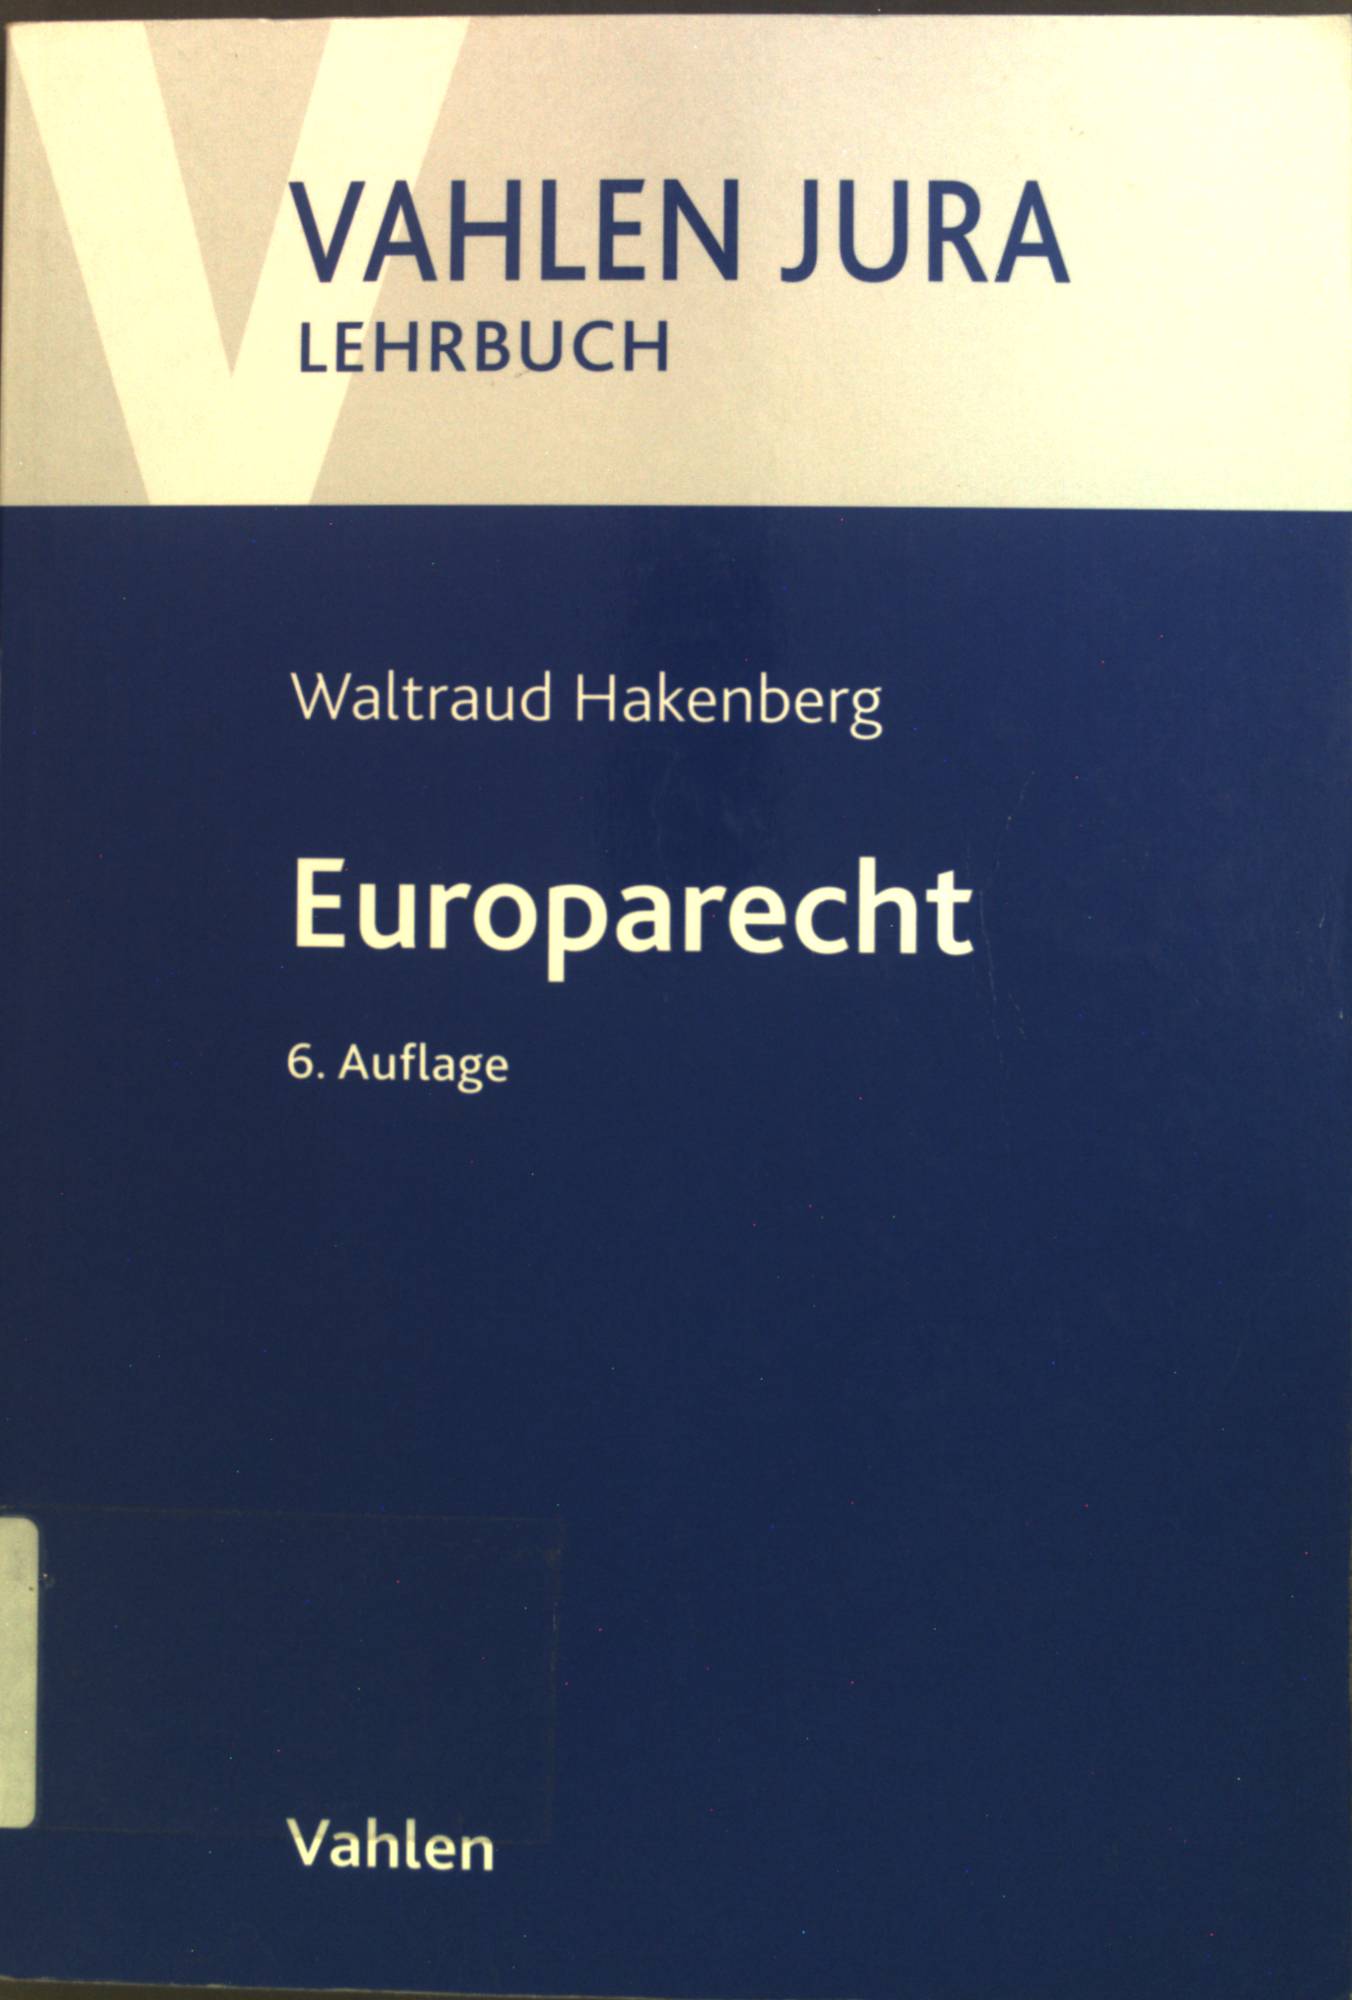 Europarecht. Vahlen Jura : Lehrbuch 6. Aufl. - Hakenberg, Waltraud